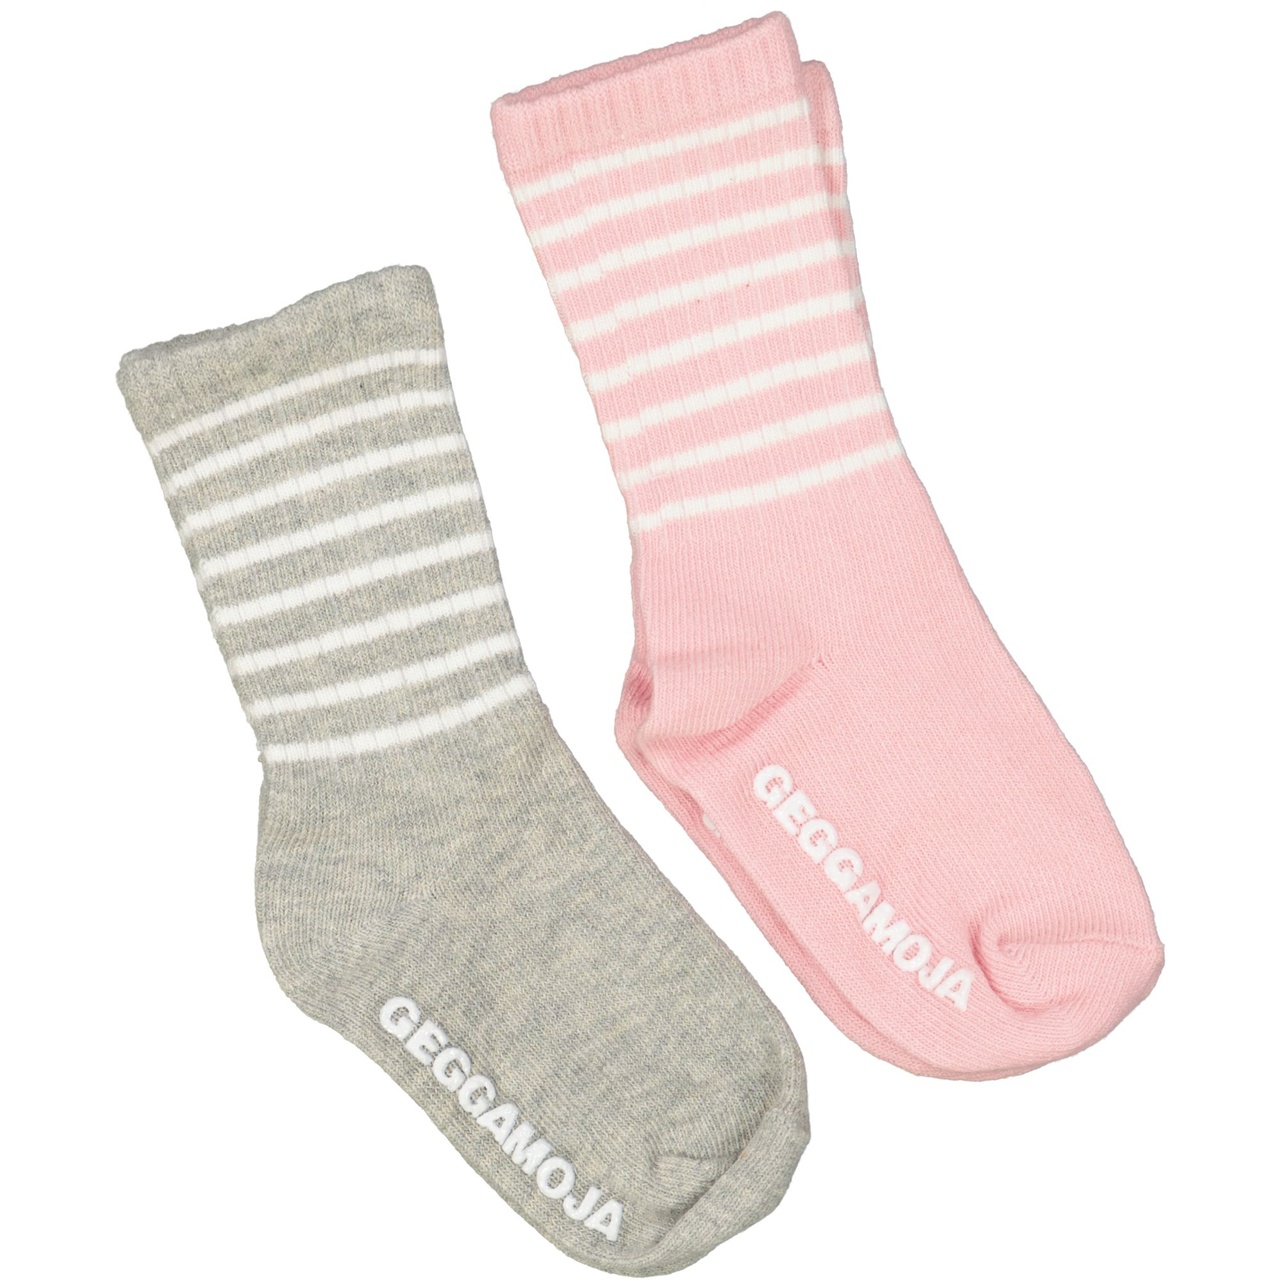 Antislip Sock Classic 2 Pack Pink/white  19-21